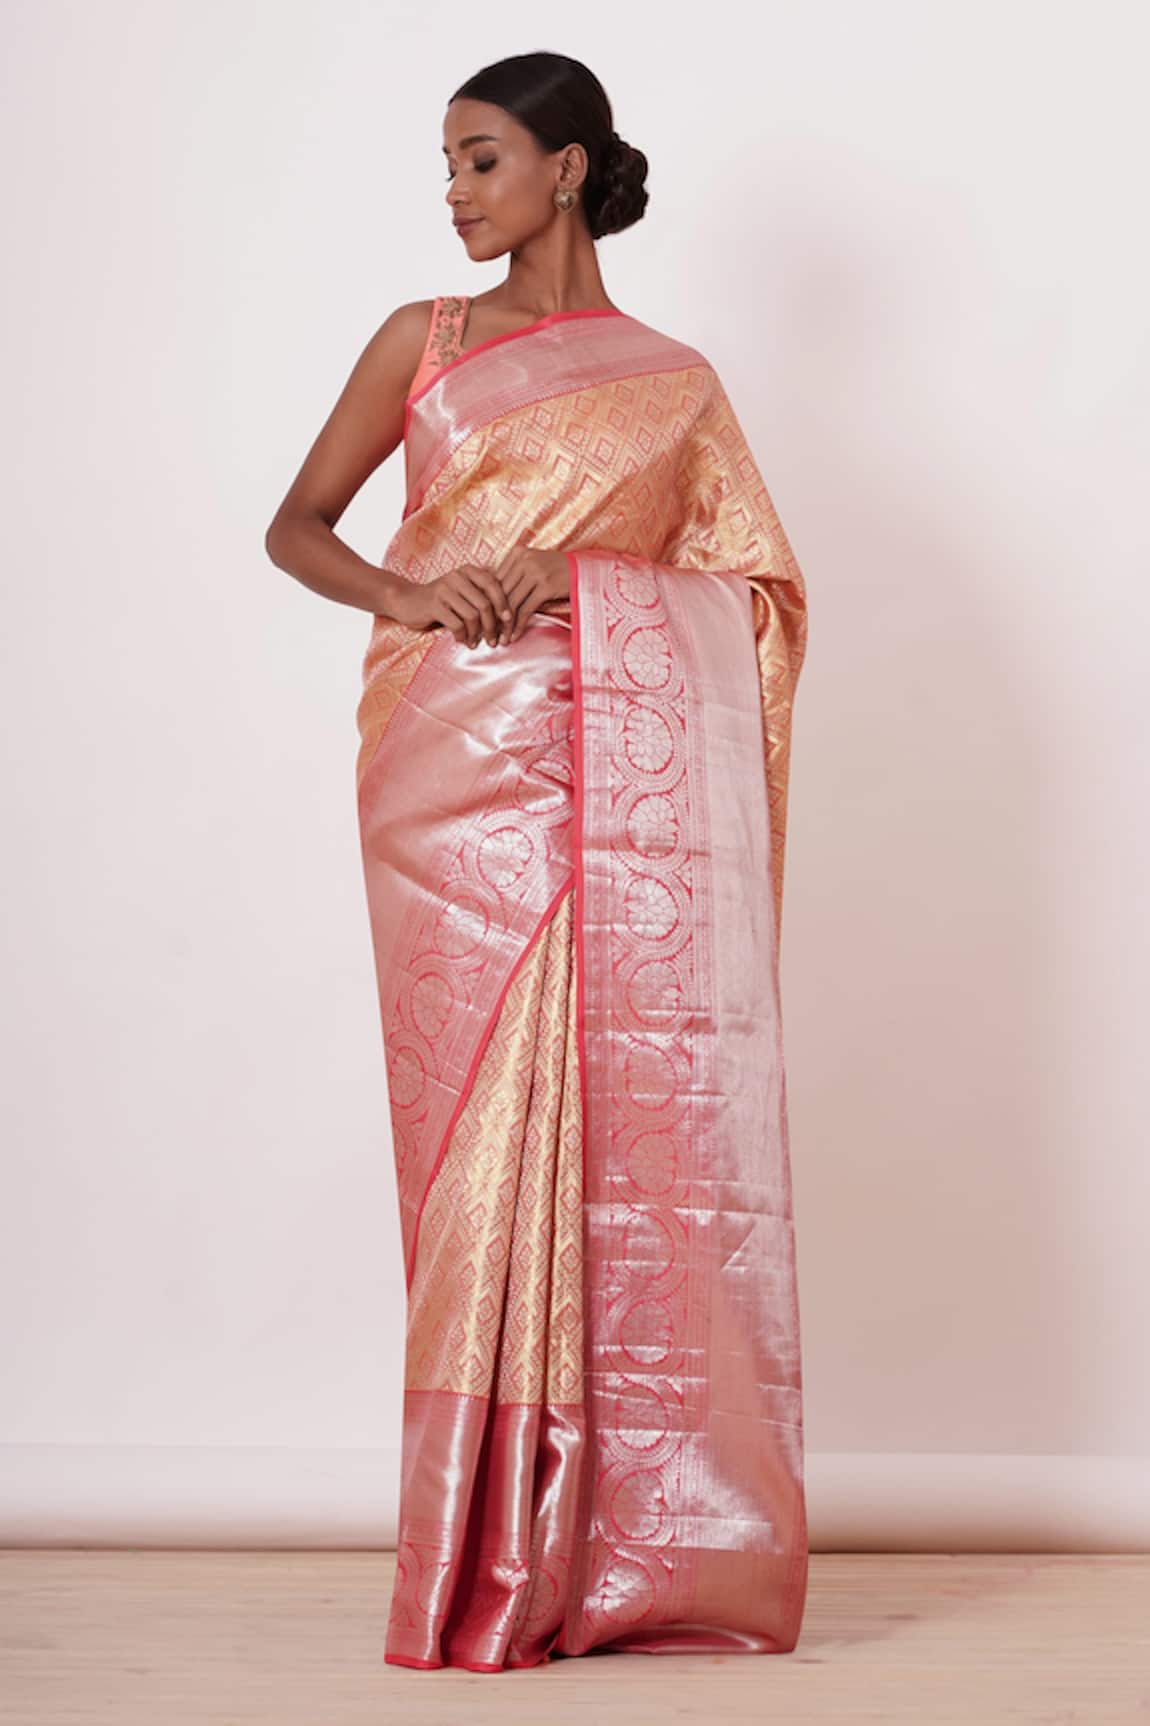 Aharin Tissue Dharamavaram Silk Saree With Blouse